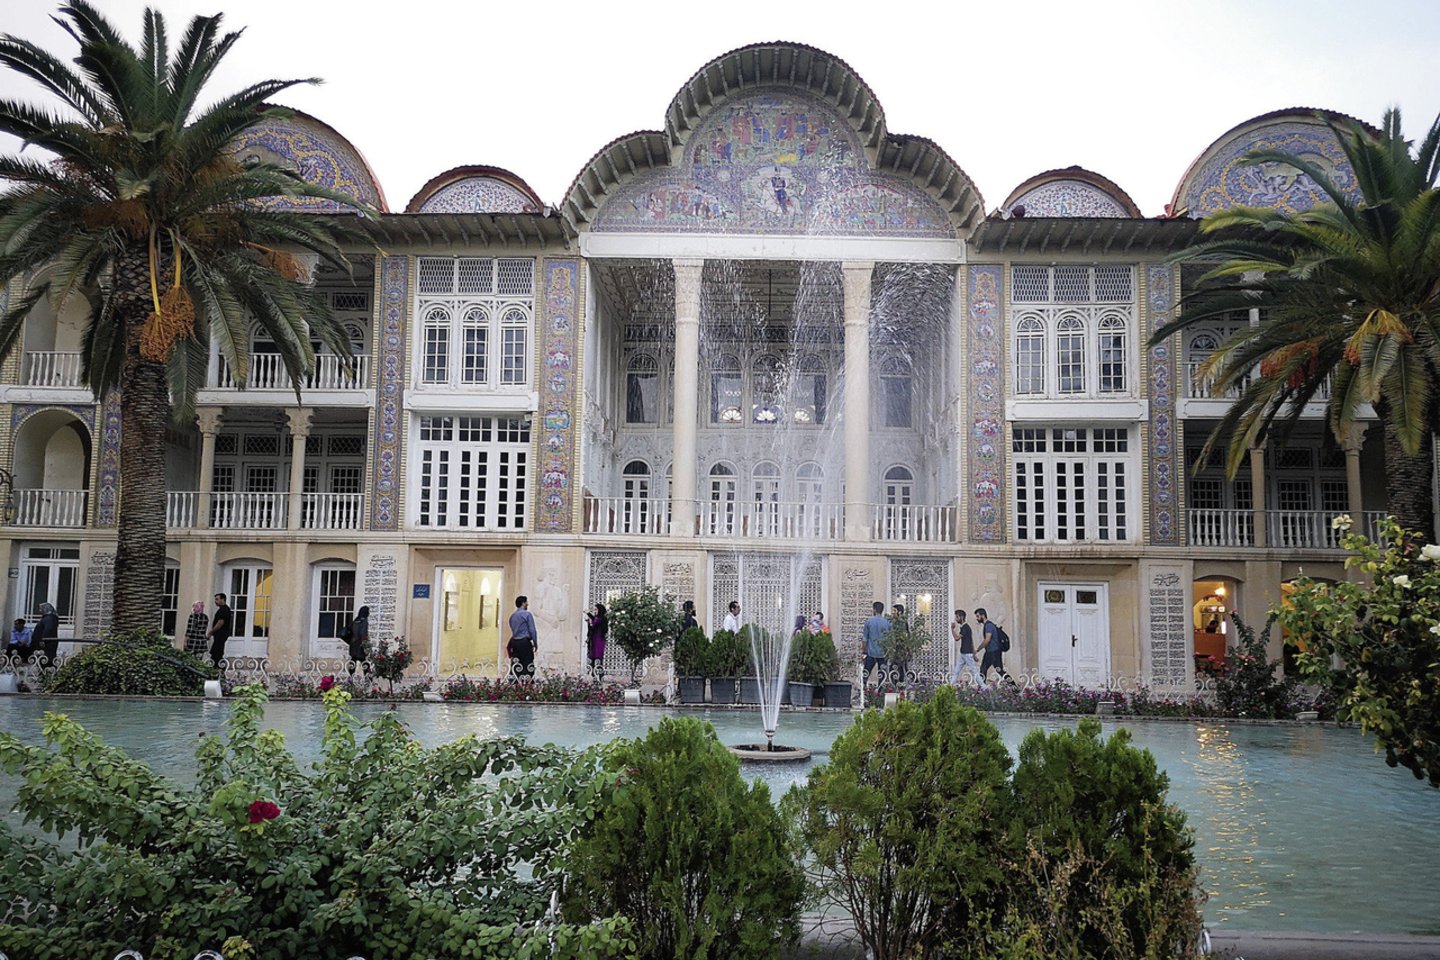 Širaze žaliuojantis Eramo persiškas sodas vilioja didele augalų įvairove, nuostabiais rūmais, fontanais.<br> I.Skliutaitės nuotr.